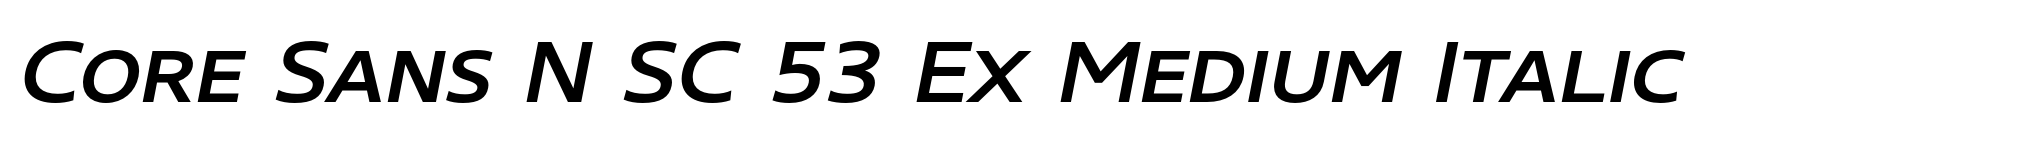 Core Sans N SC 53 Ex Medium Italic image